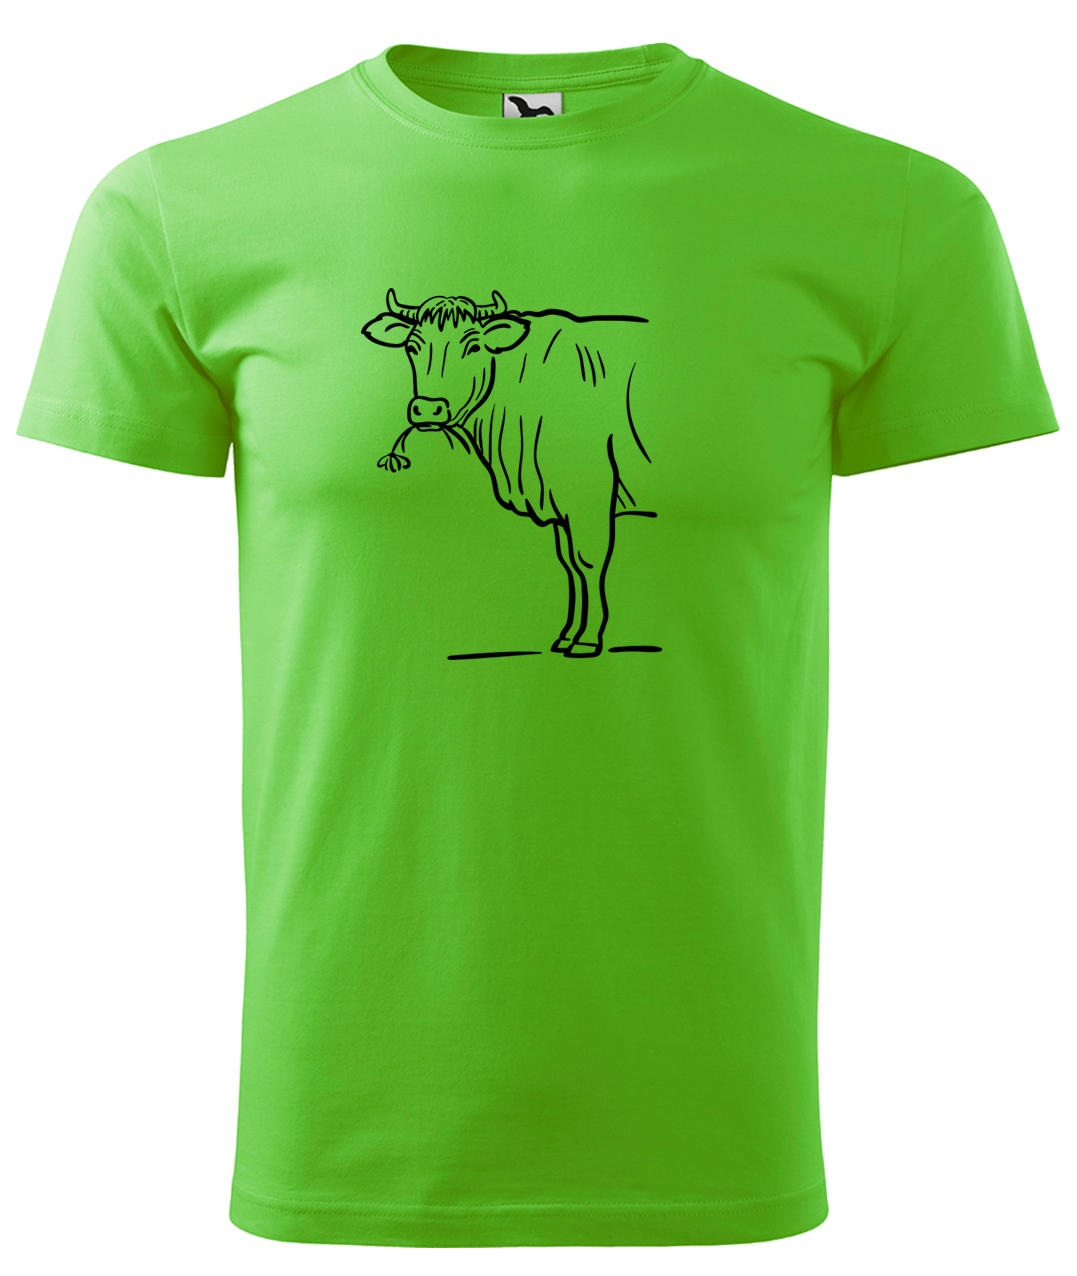 Dětské tričko s krávou - Býk Velikost: 4 roky / 110 cm, Barva: Apple Green (92), Délka rukávu: Krátký rukáv